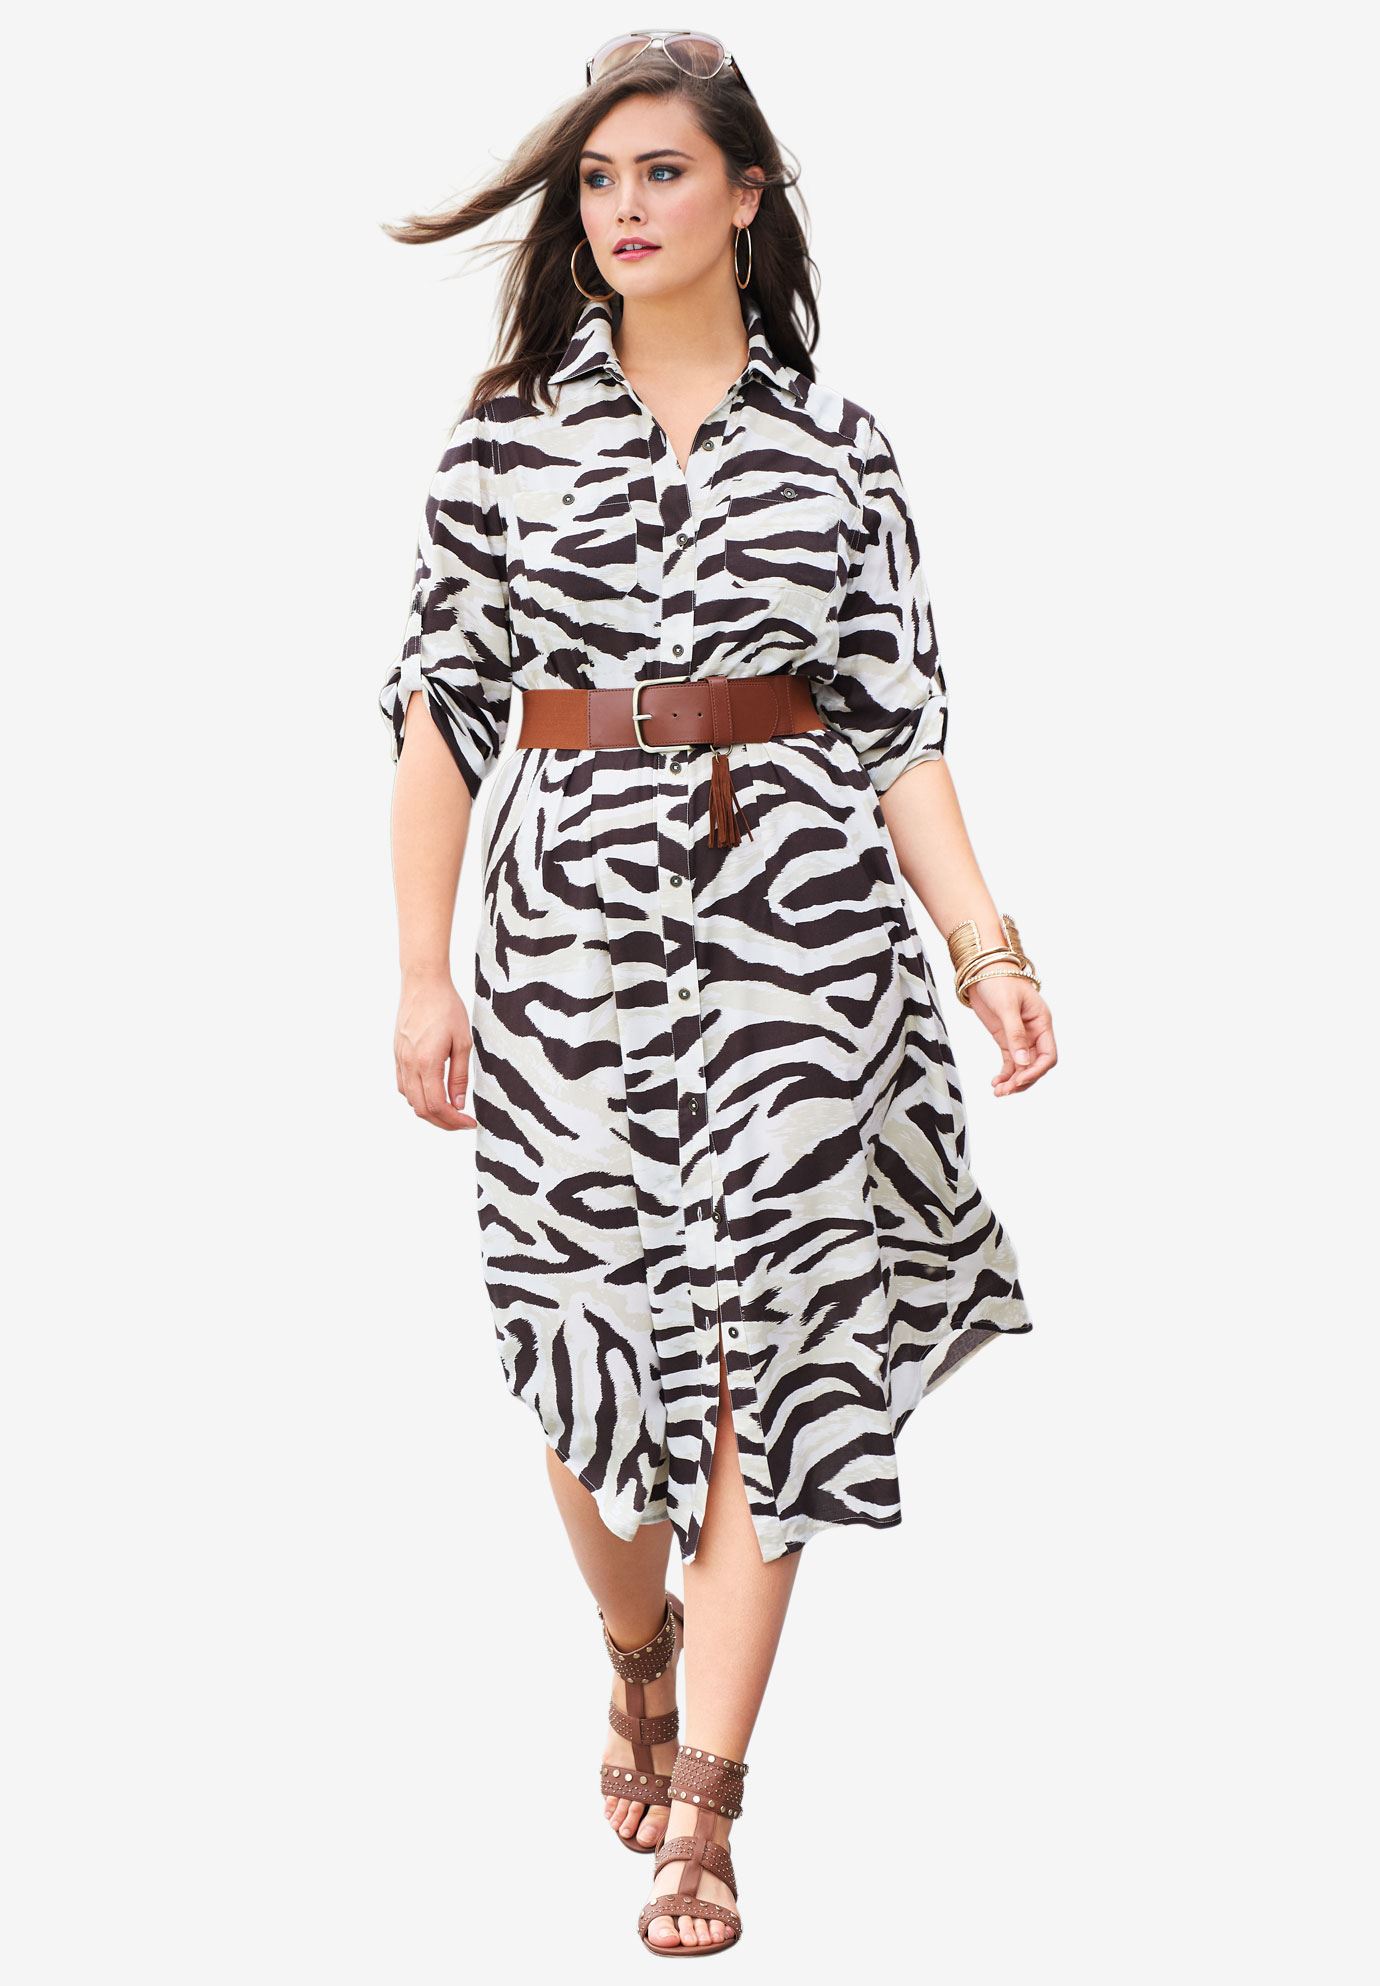 picture of safari dress